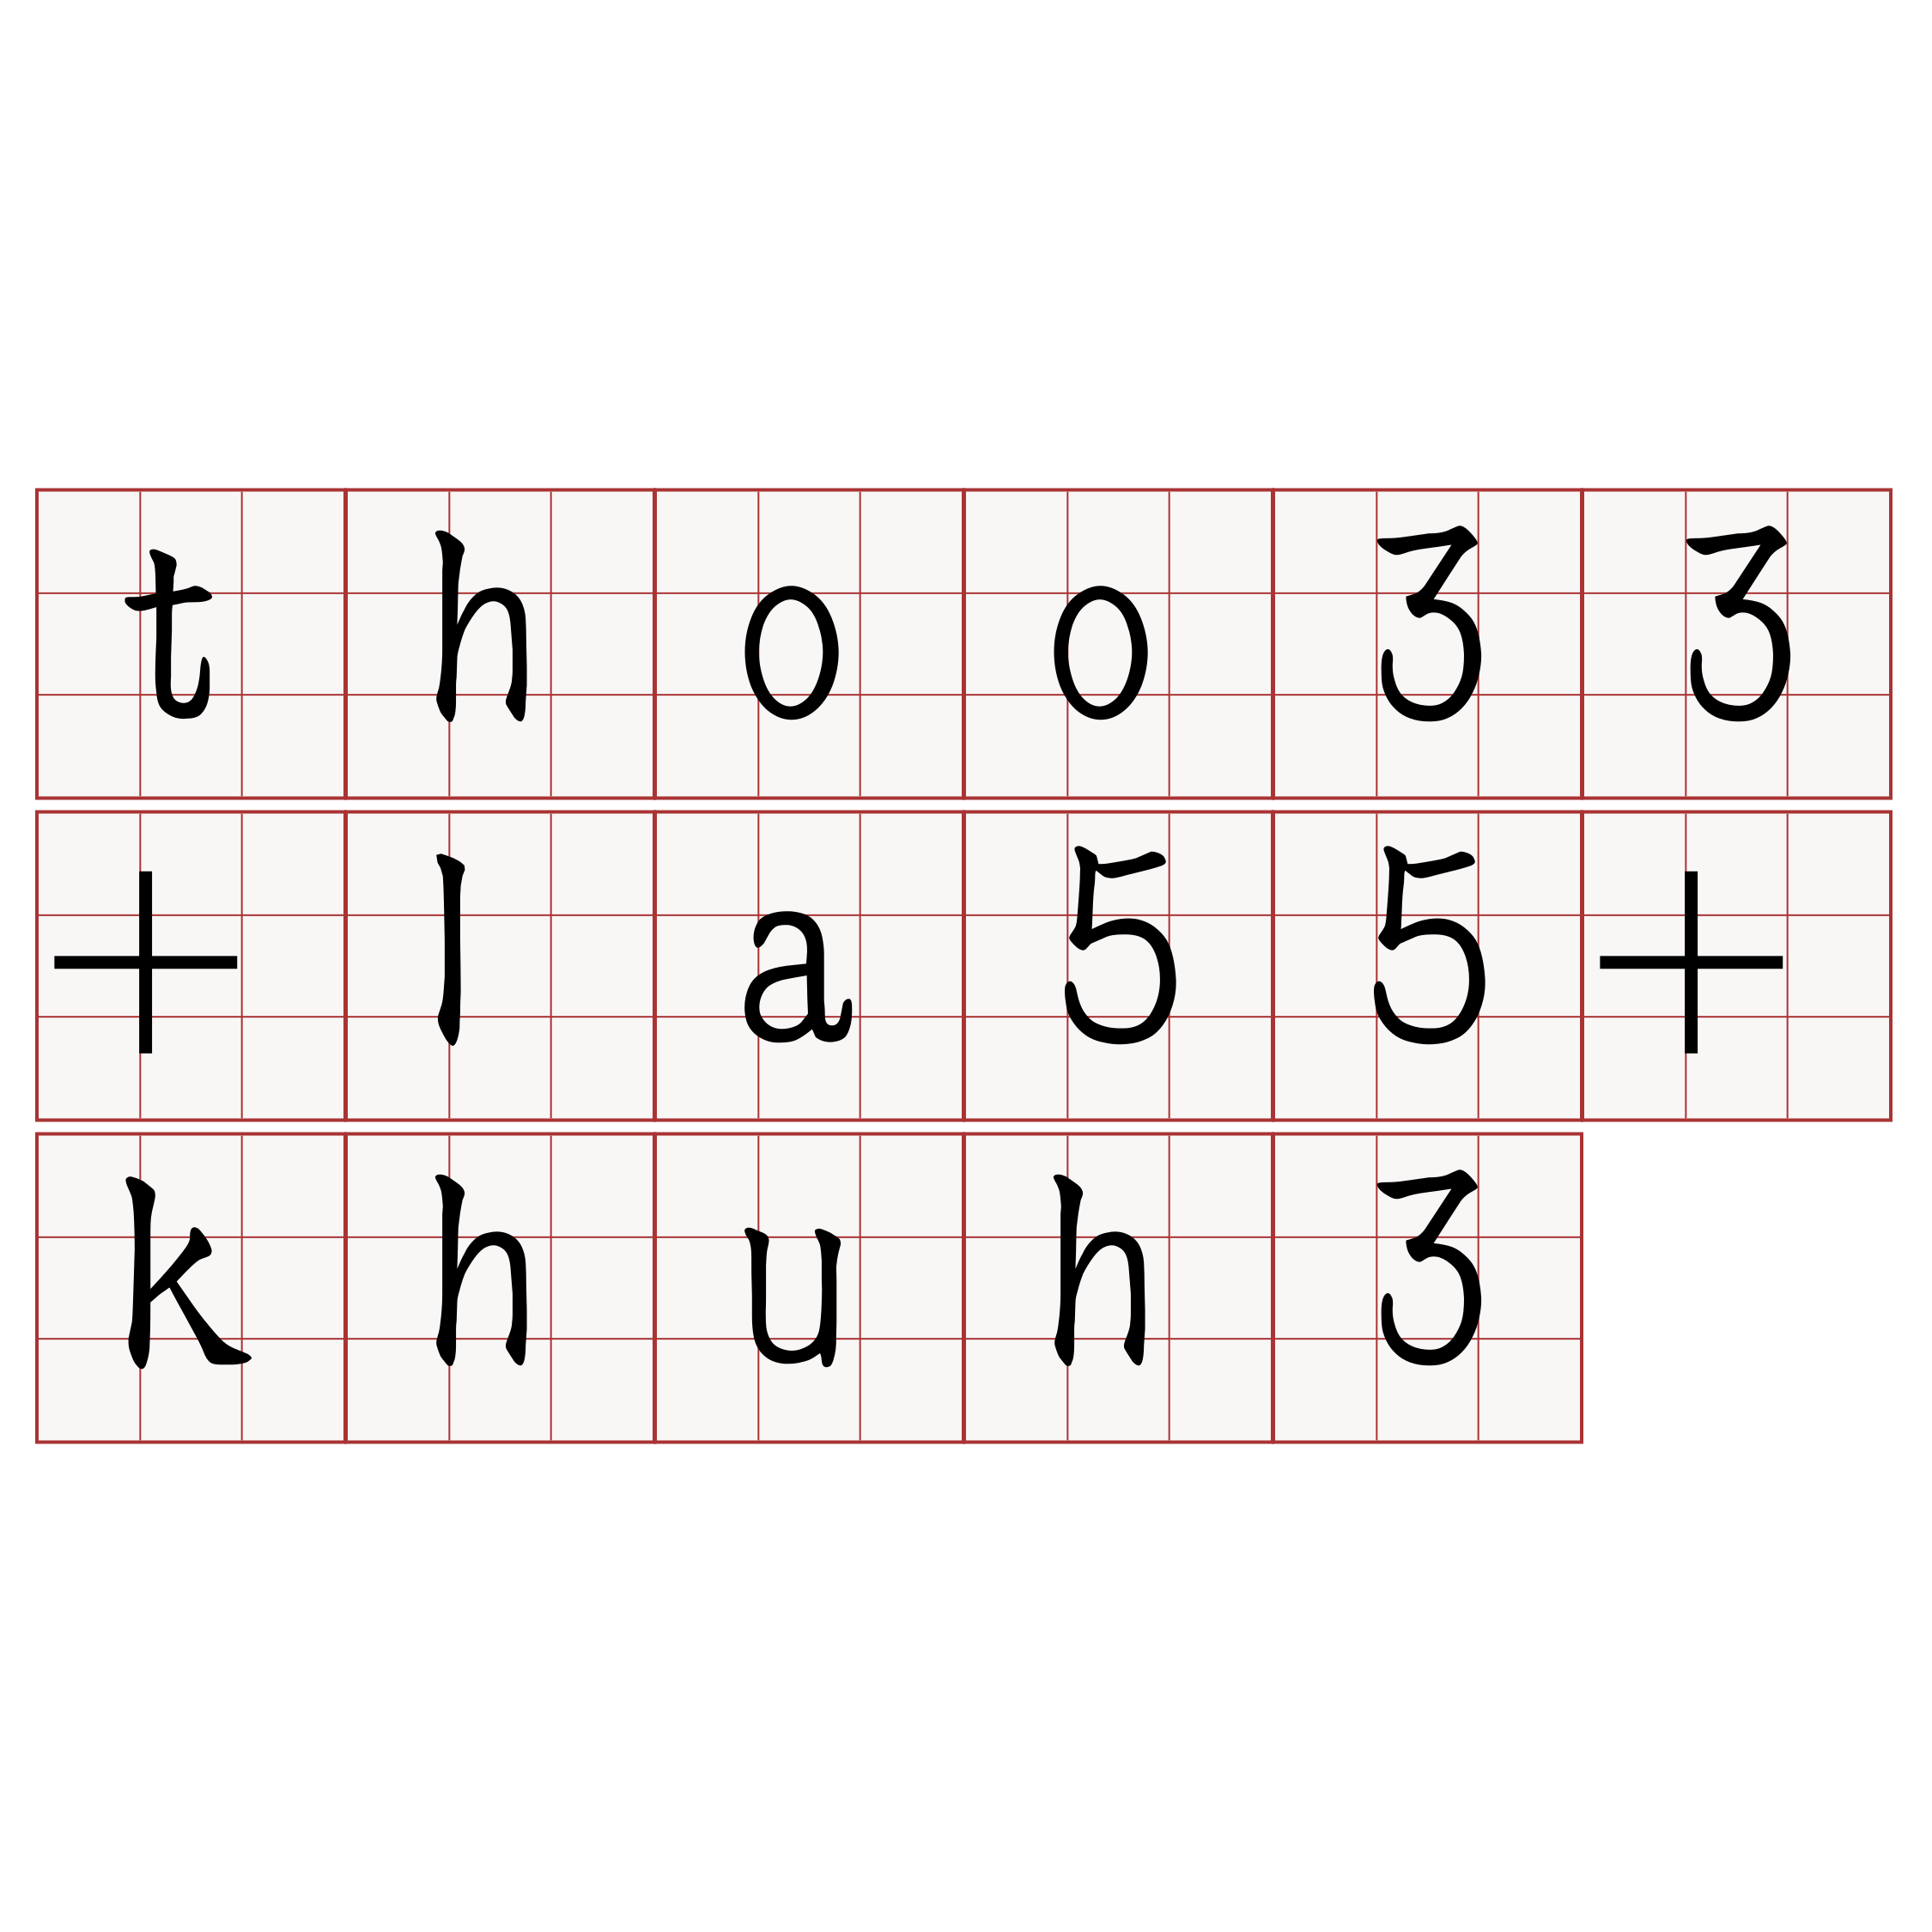 thoo33+la55+khuh3